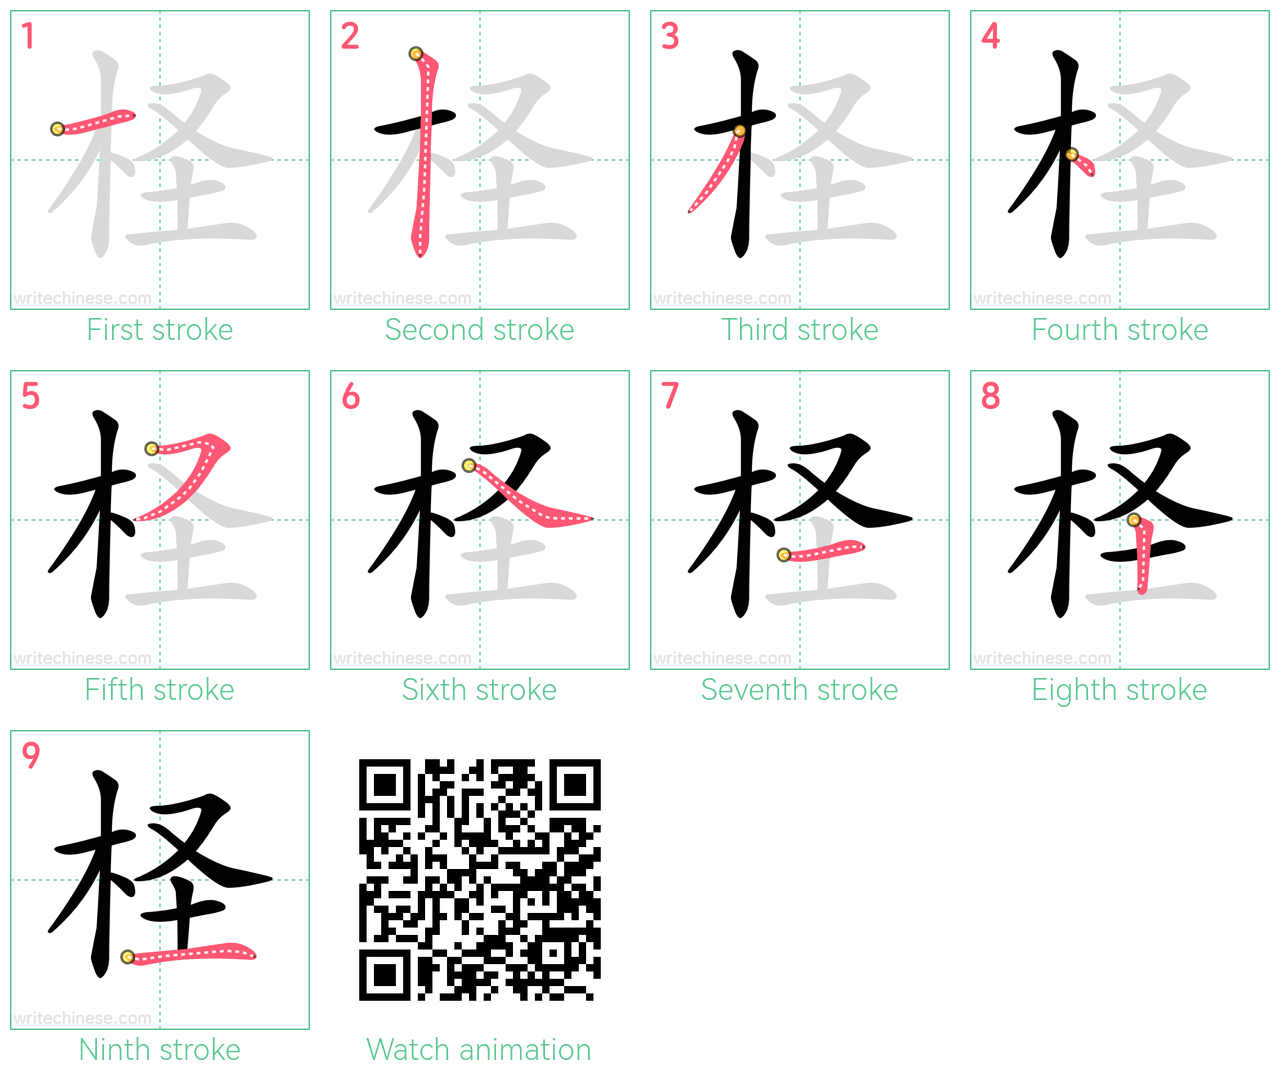 柽 step-by-step stroke order diagrams